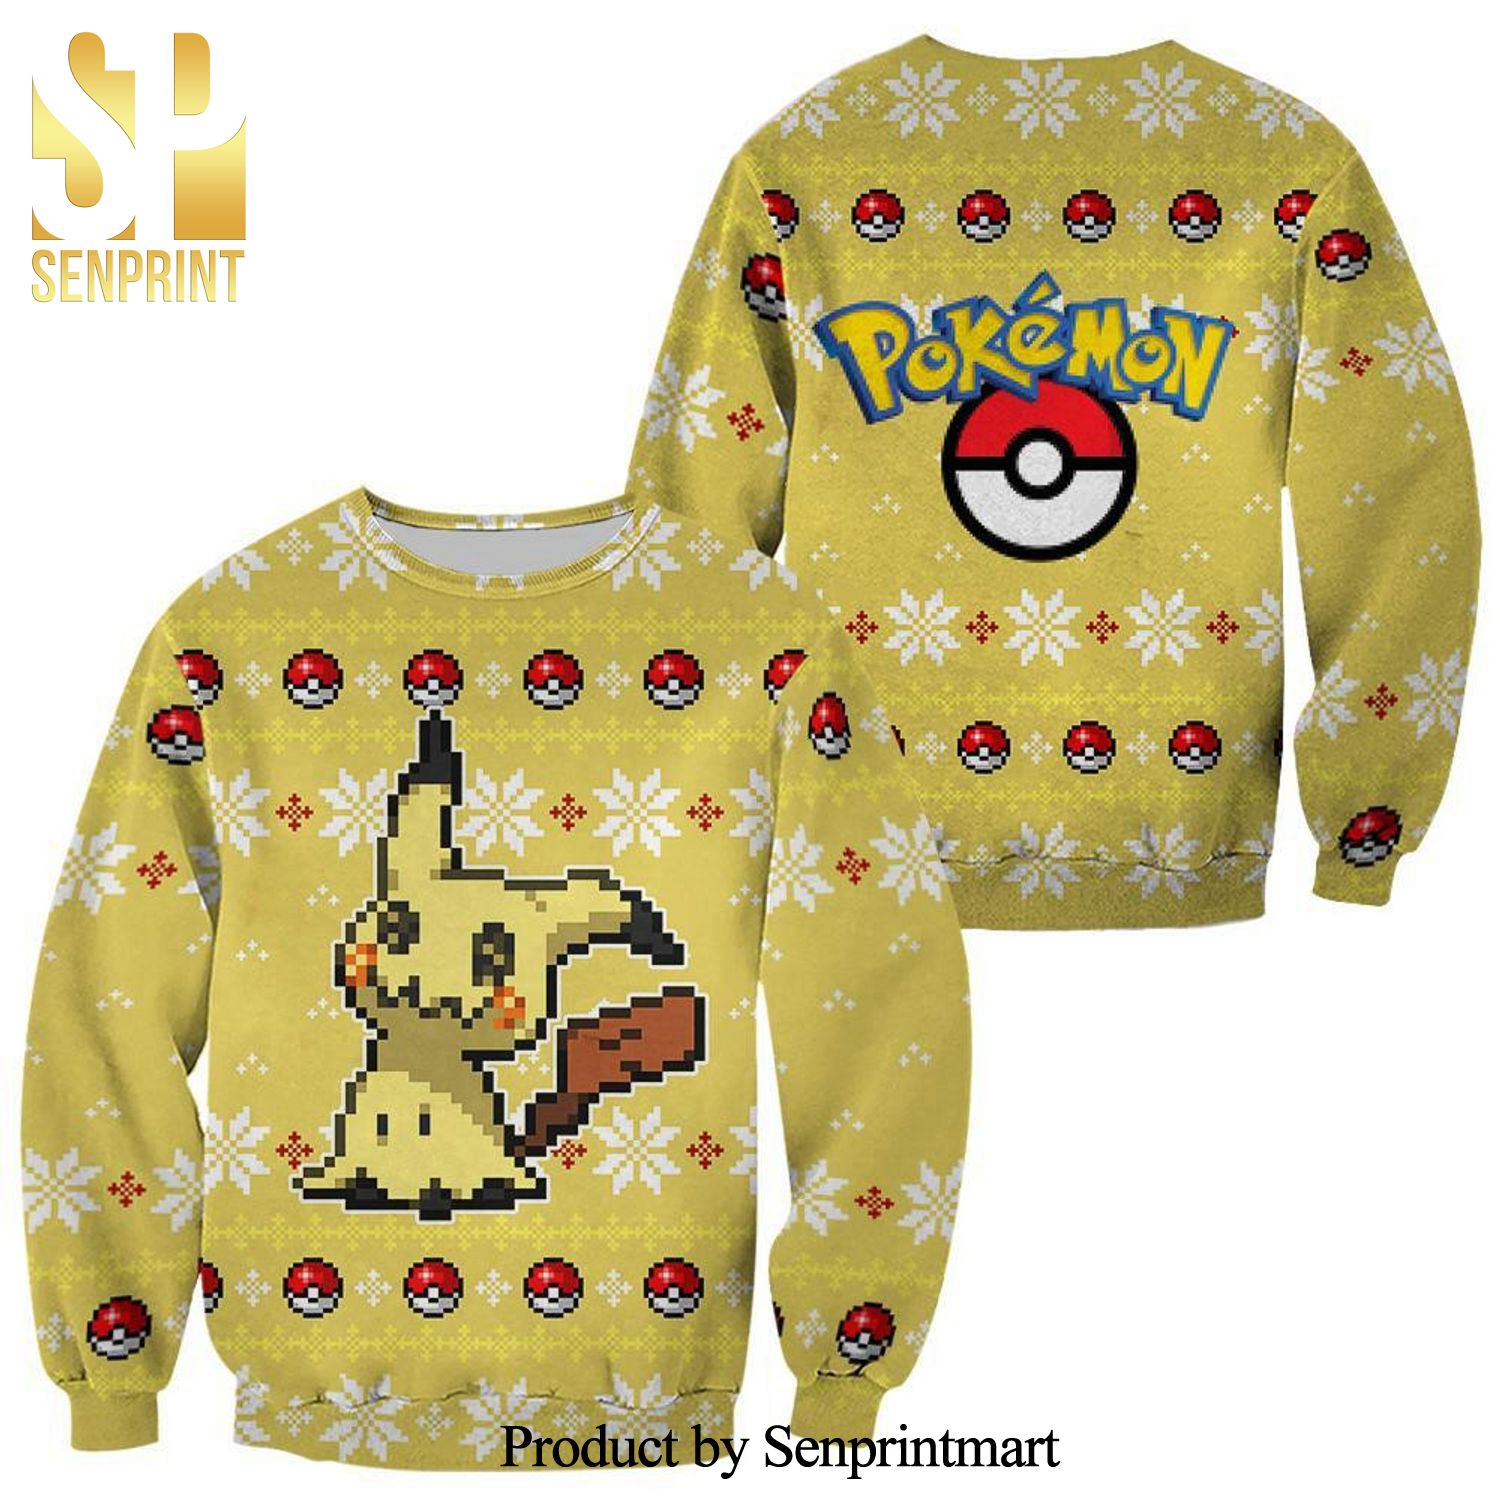 Mimikyu Pokemon Knitted Ugly Christmas Sweater